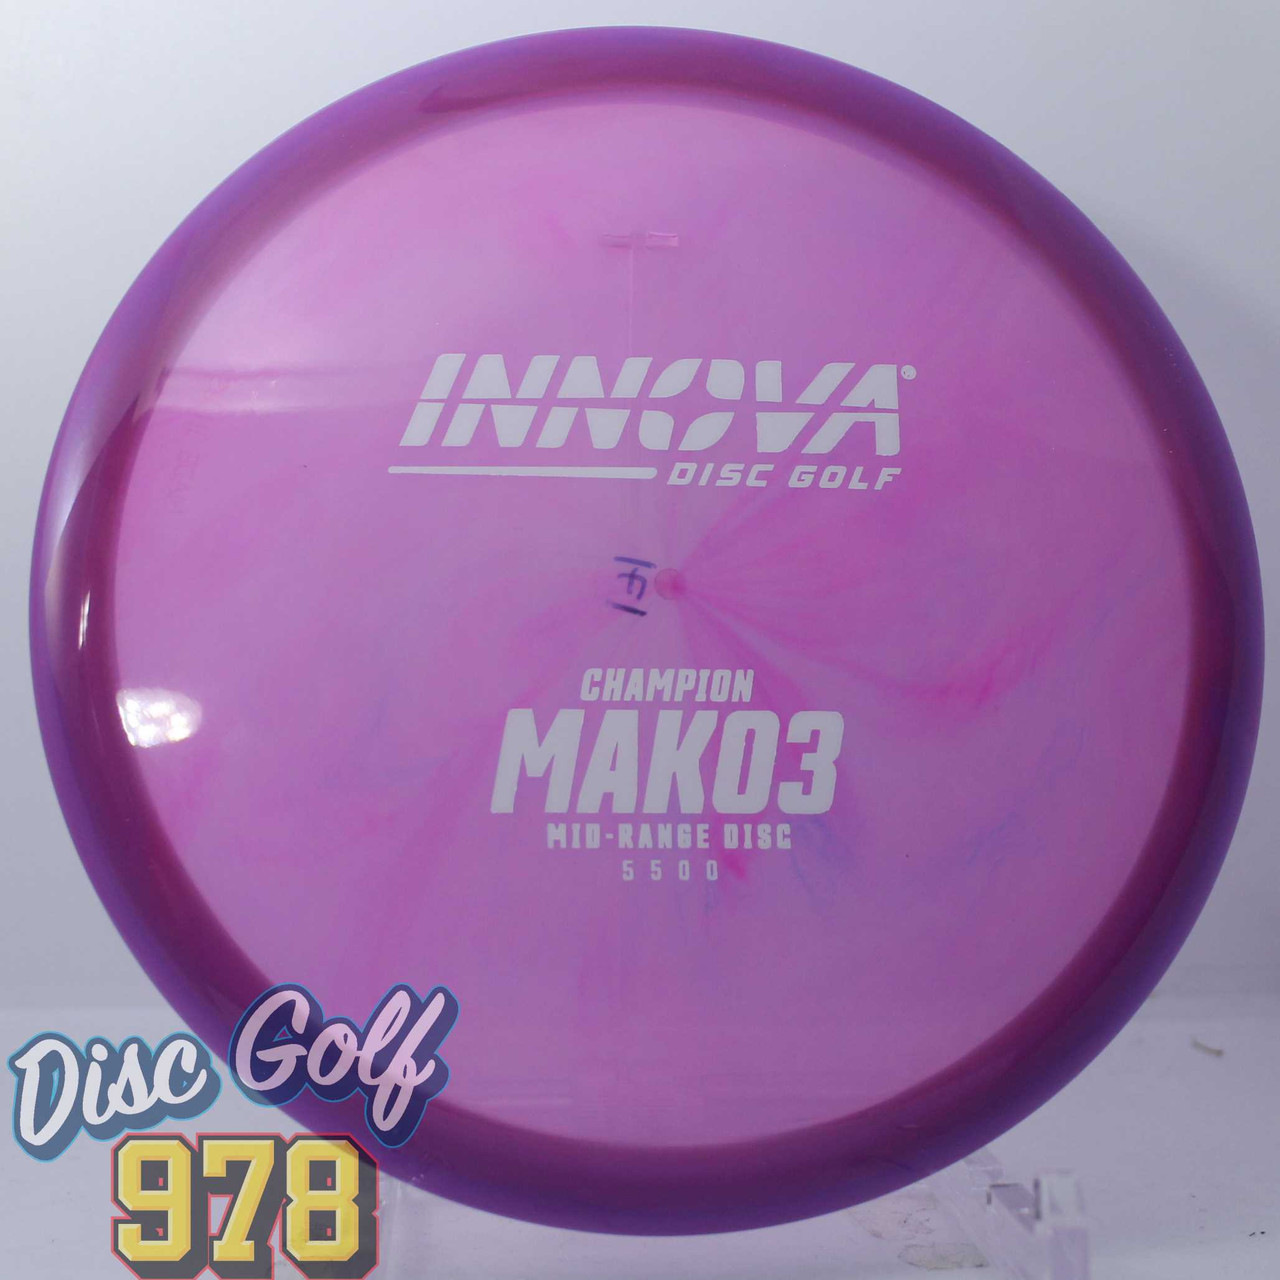 Innova Mako3 Champion Purple-White 172.6g